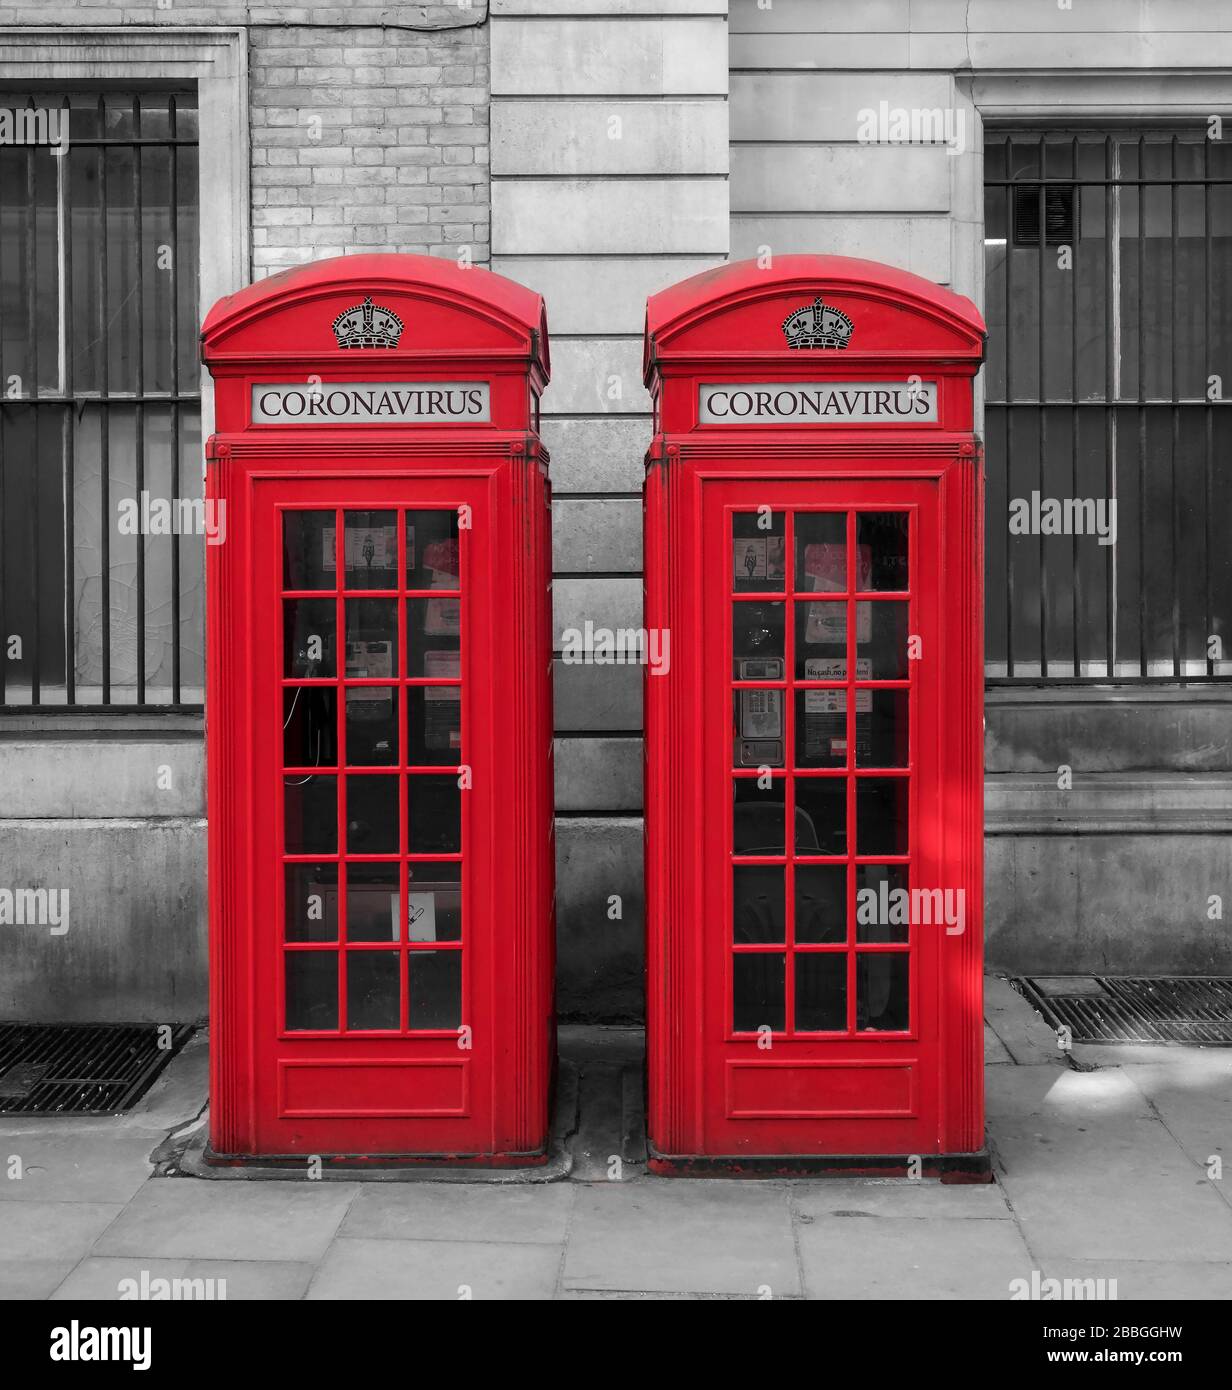 Coronavirus or Covid 19 Illustration on British Red Telephone Boxes, London, England, UK Stock Photo